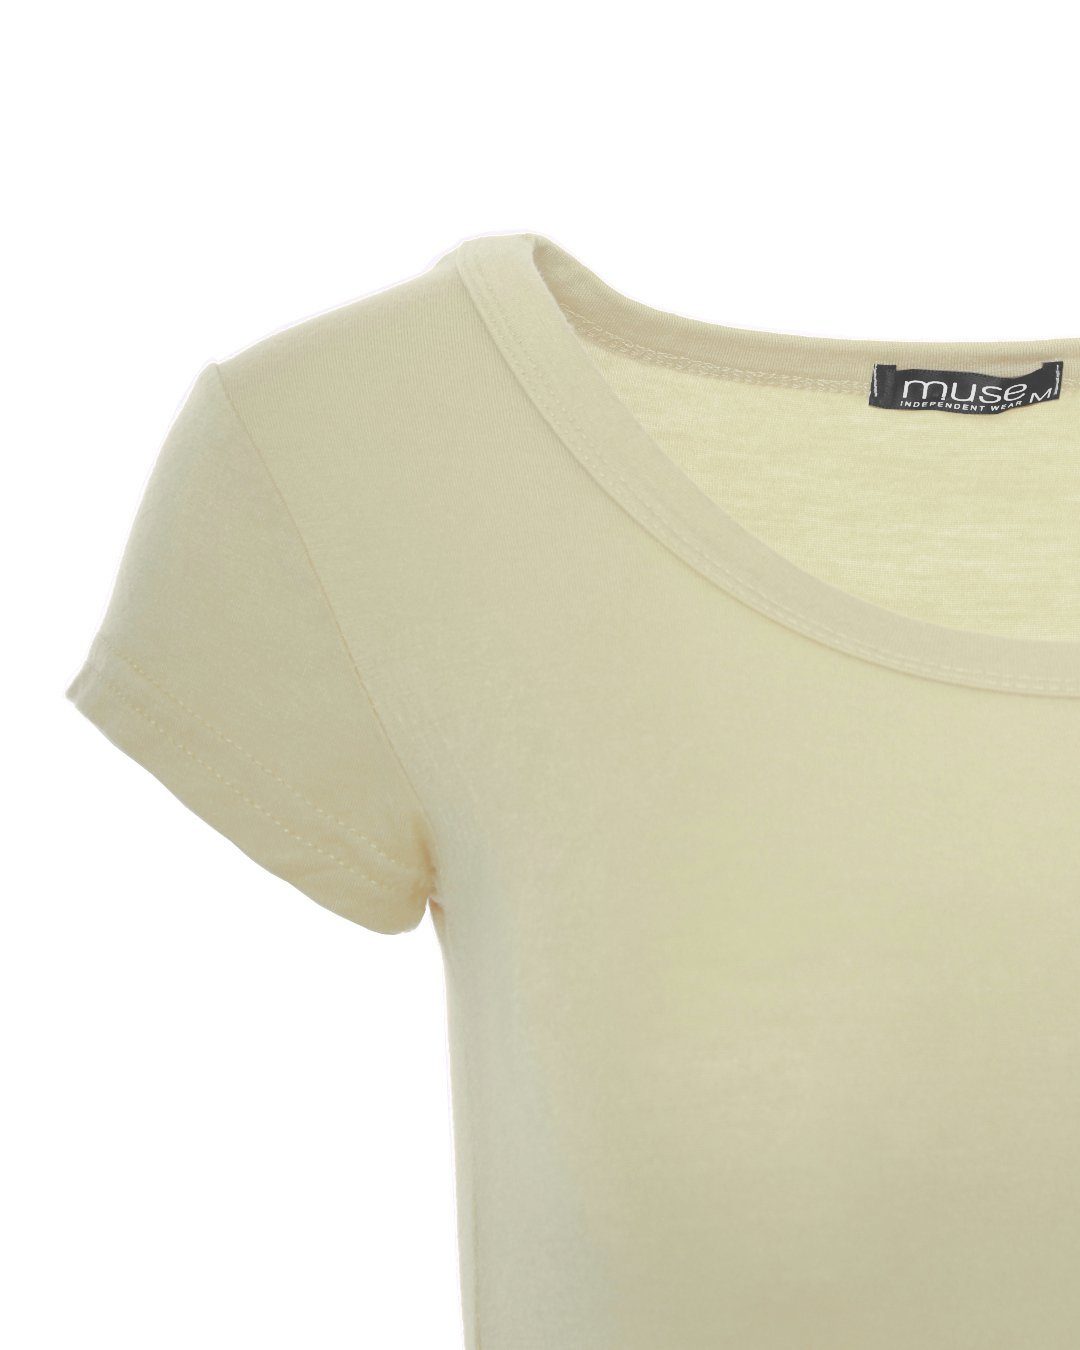 Basic Fit T-Shirt 1001 Kurzarm Muse Skinny sand T-Shirt